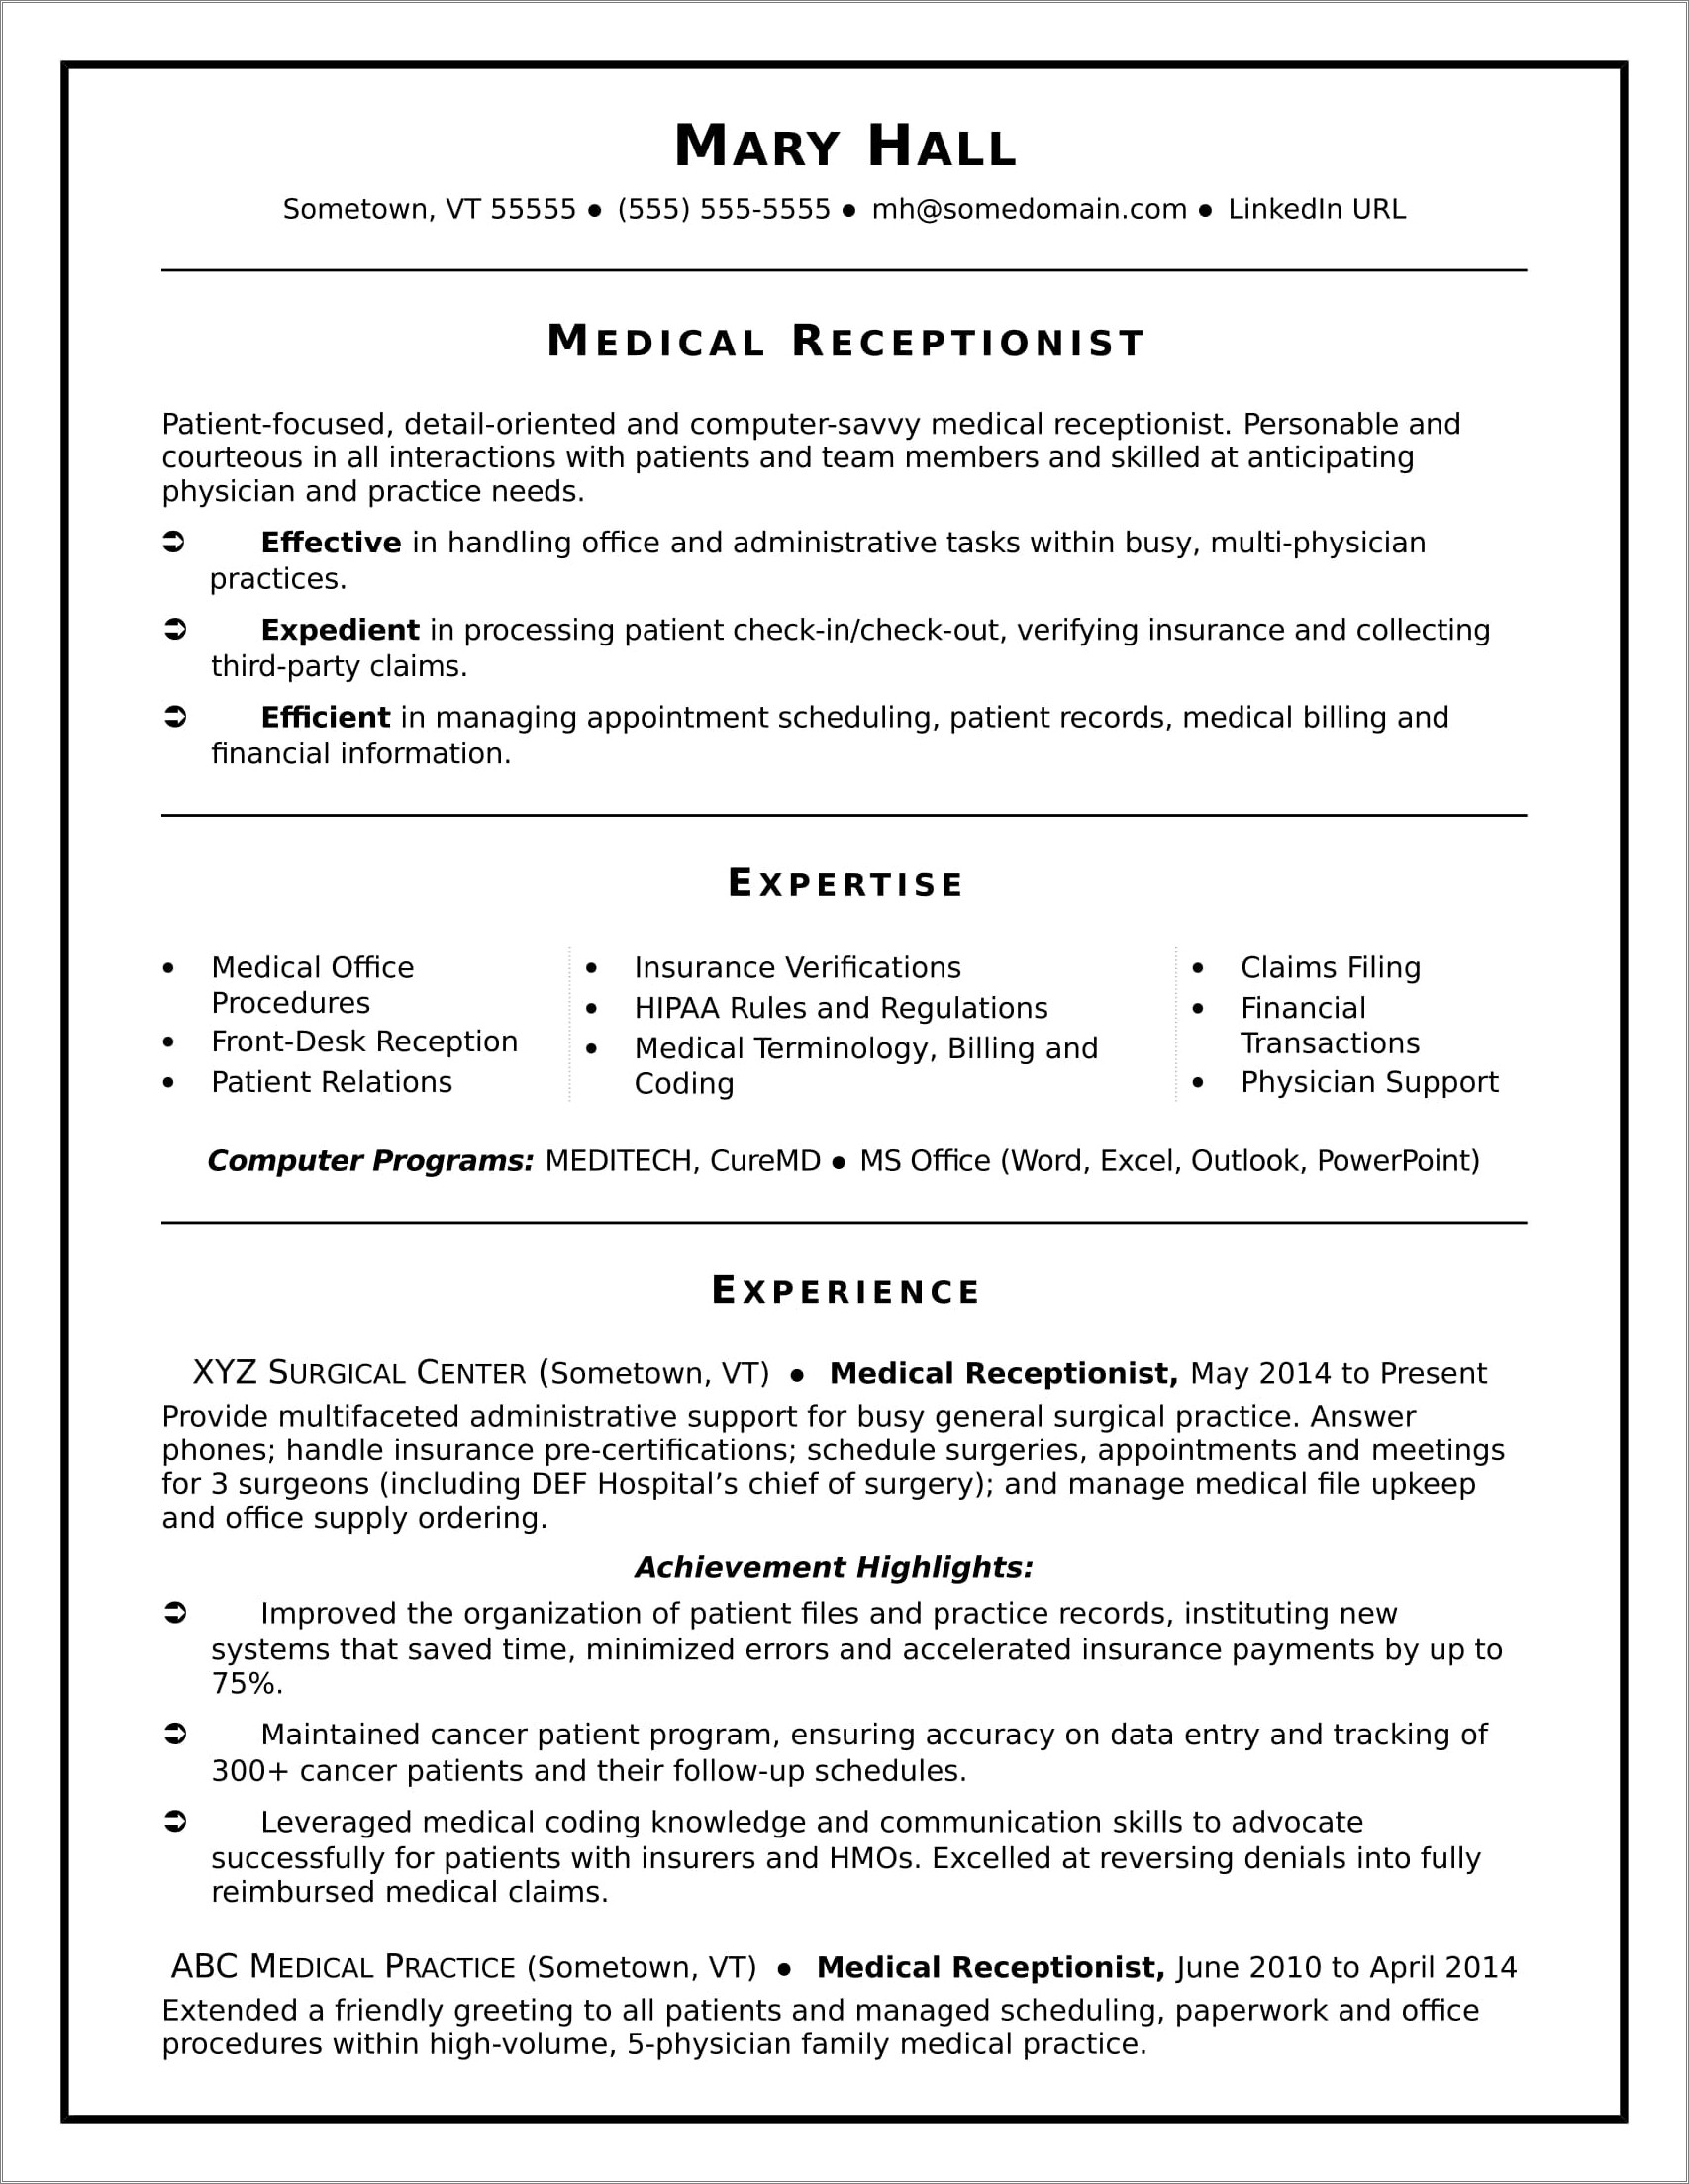 Sample Resume For A Medical Coder